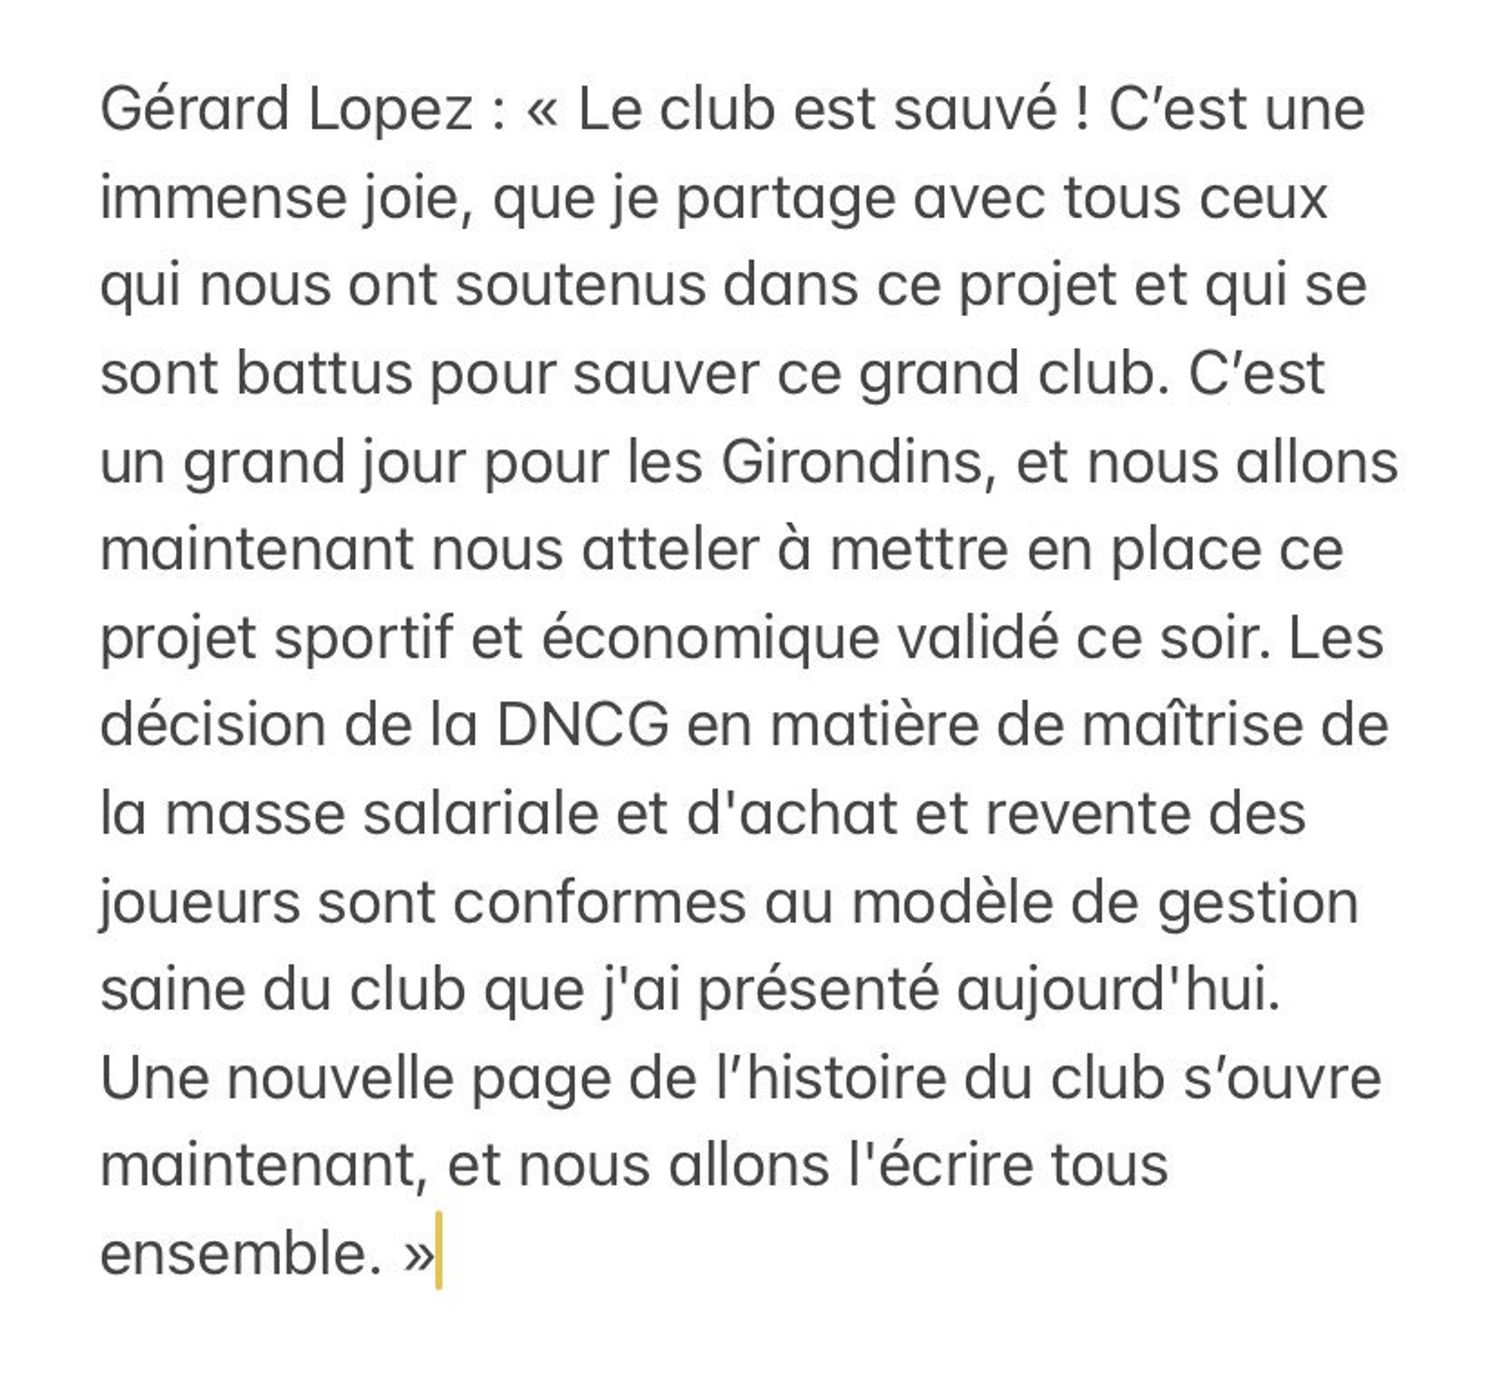 Communiqué Gérard Lopez